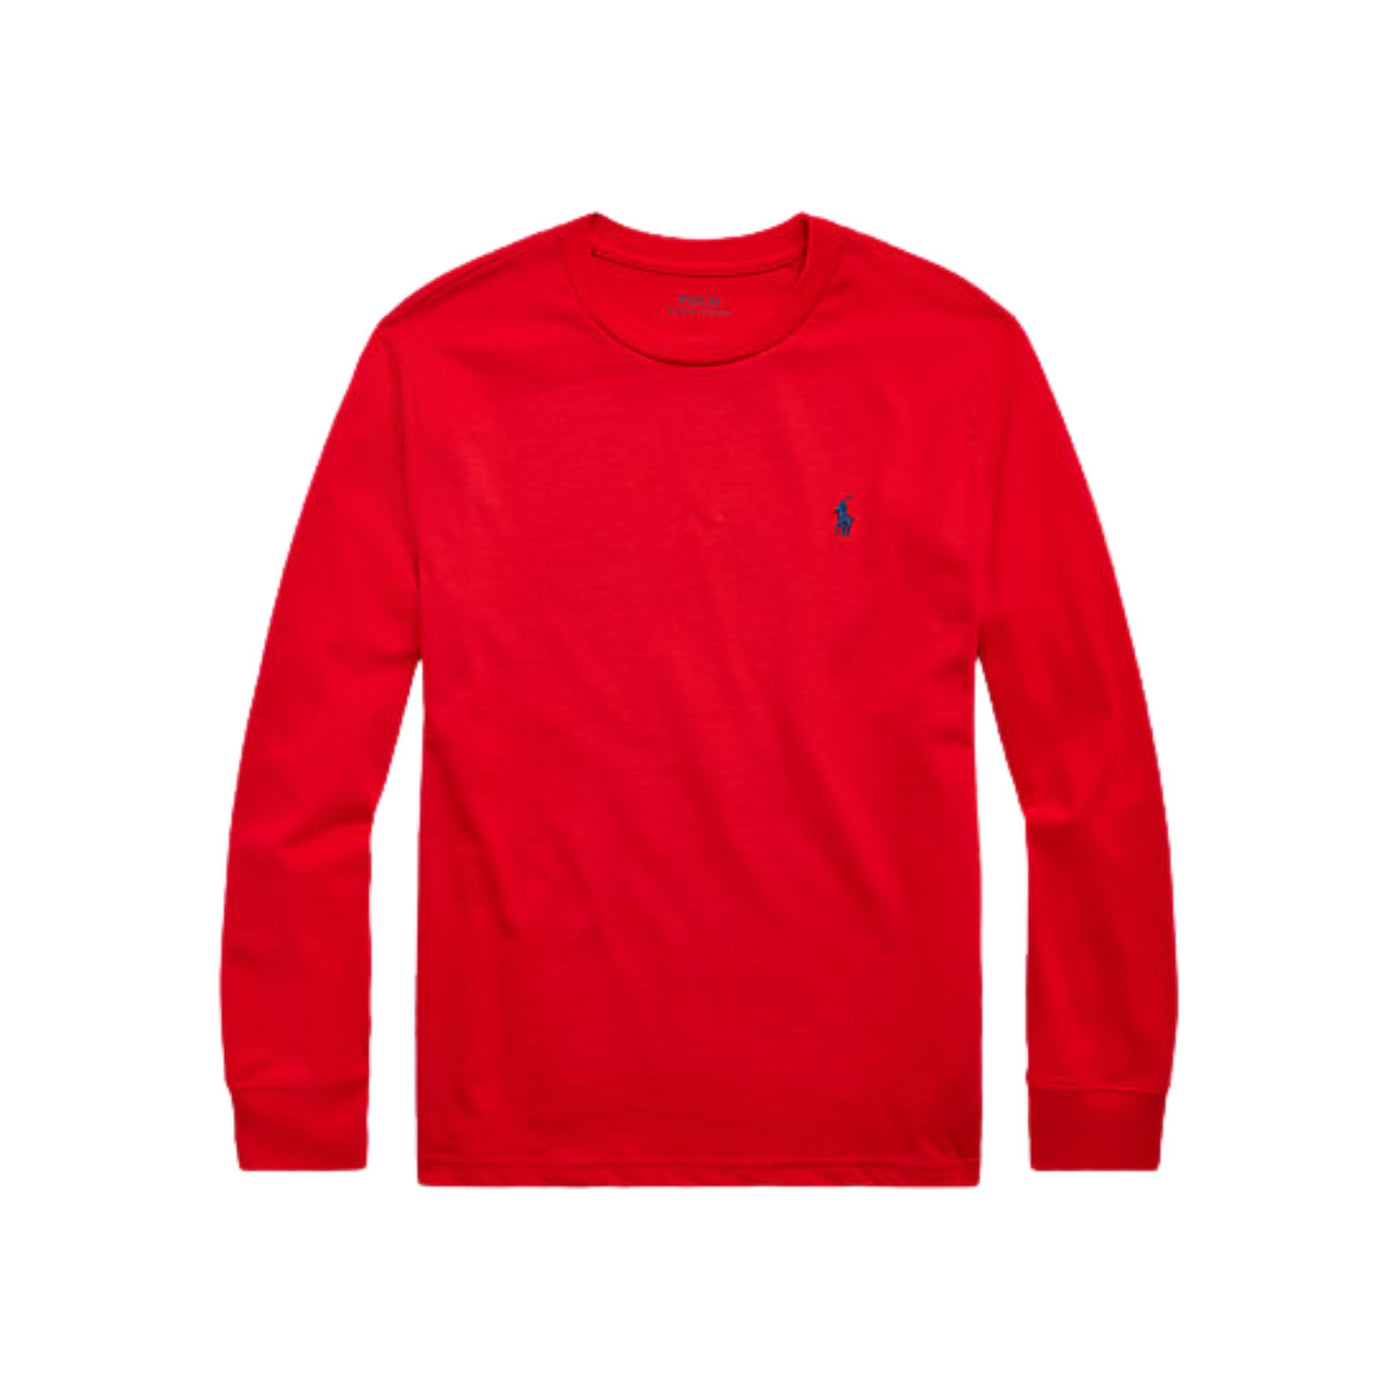 Maglietta bambino rossa firmata Polo Ralph Lauren vista frontale